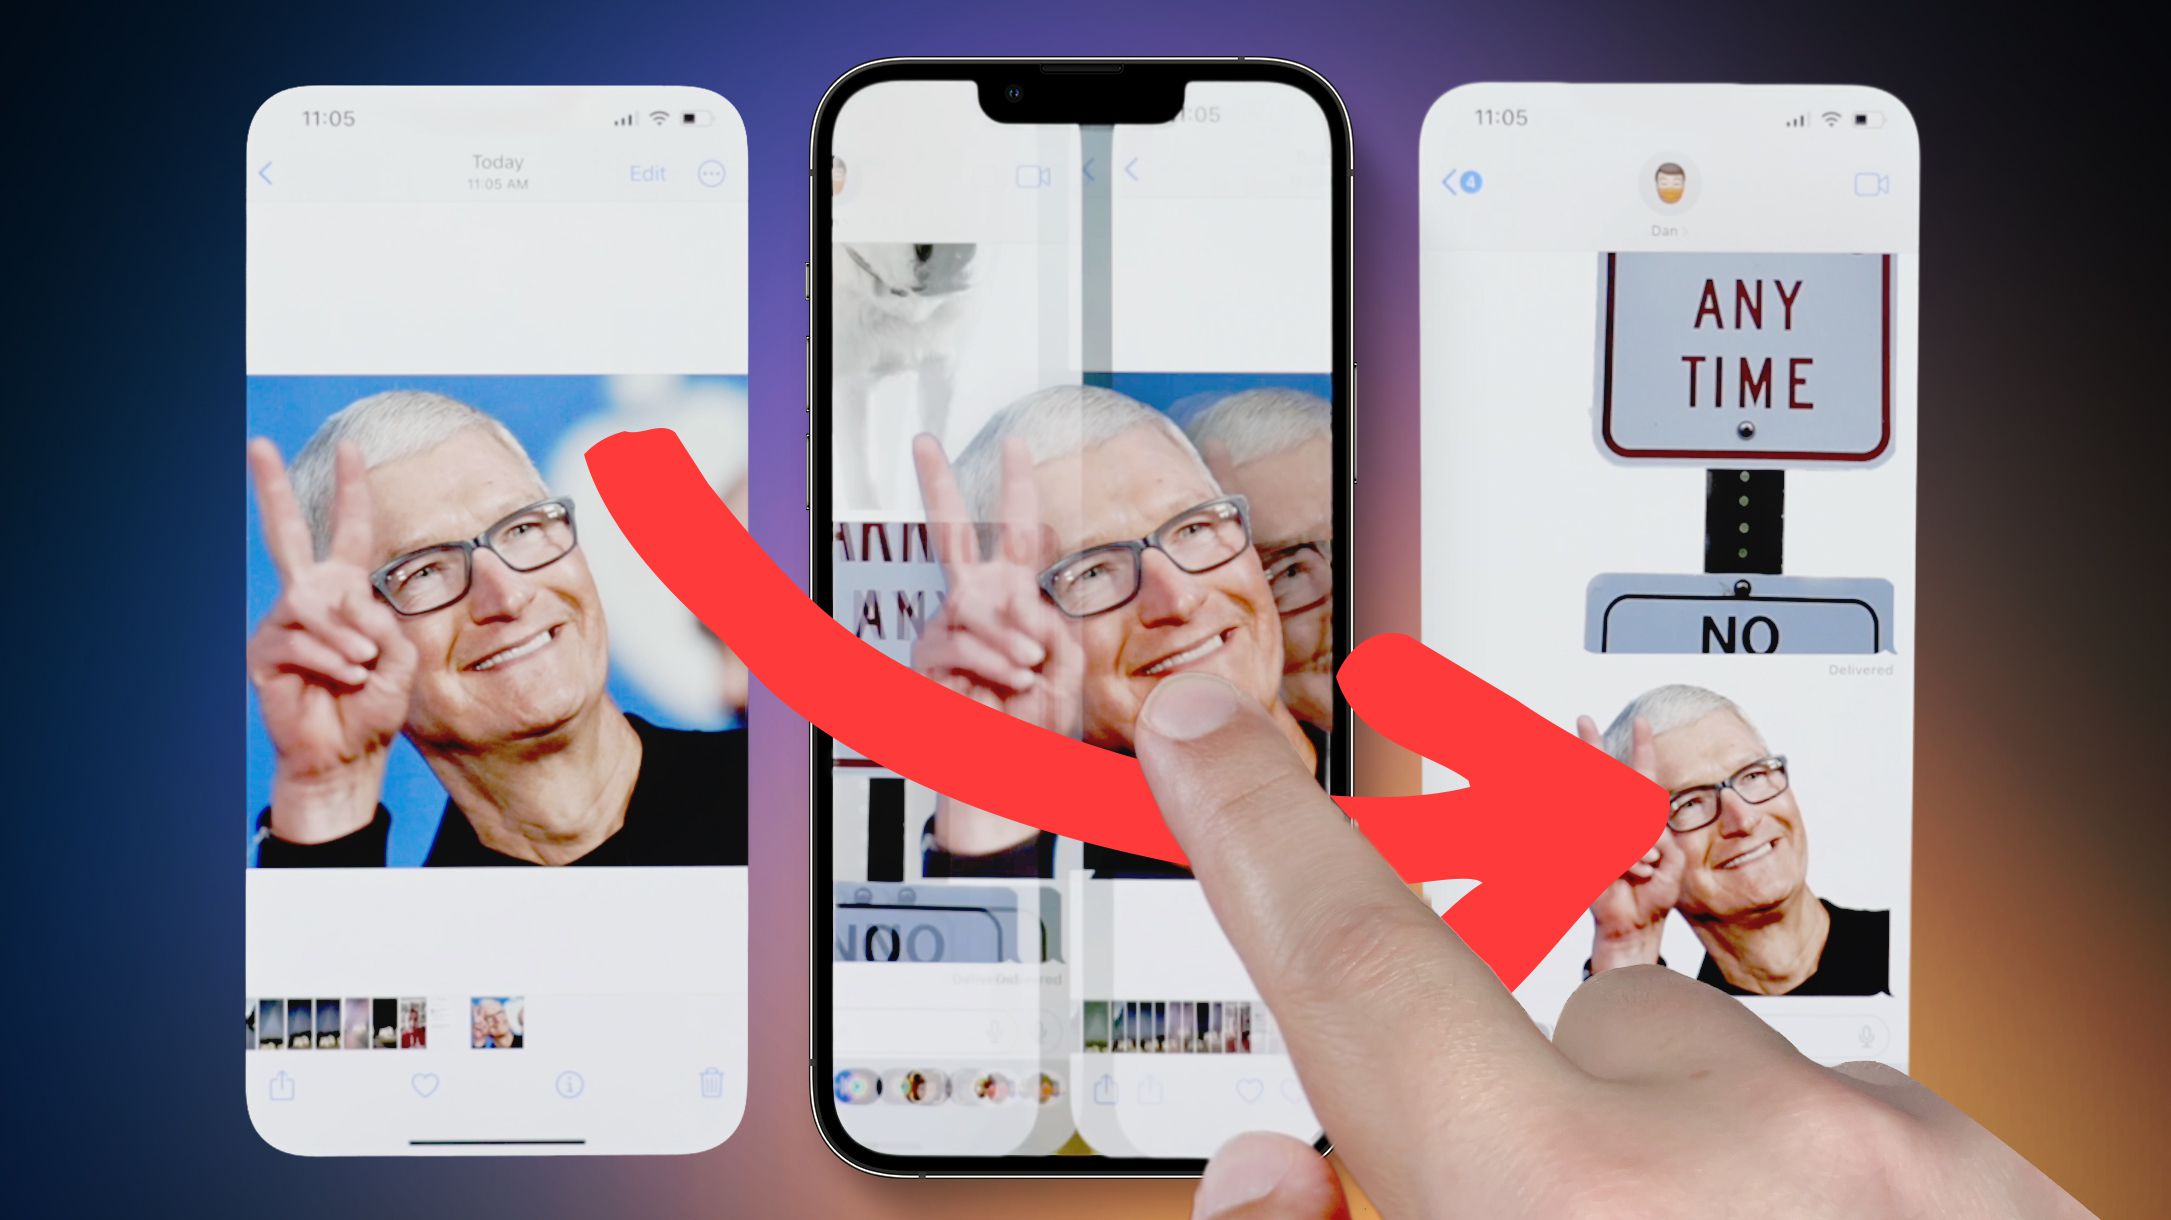 Đổi hình nền cho màn hình chính và khóa là một cách tuyệt vời để làm tươi mới hình ảnh của điện thoại iPhone của bạn. Hệ điều hành iOS 16 của Apple mang đến cho người dùng nhiều tùy chọn đa dạng để đáp ứng mong muốn thiết kế cá nhân của bạn. Tận dụng tính năng thú vị này để biến chiếc điện thoại của bạn trở nên độc đáo hơn.